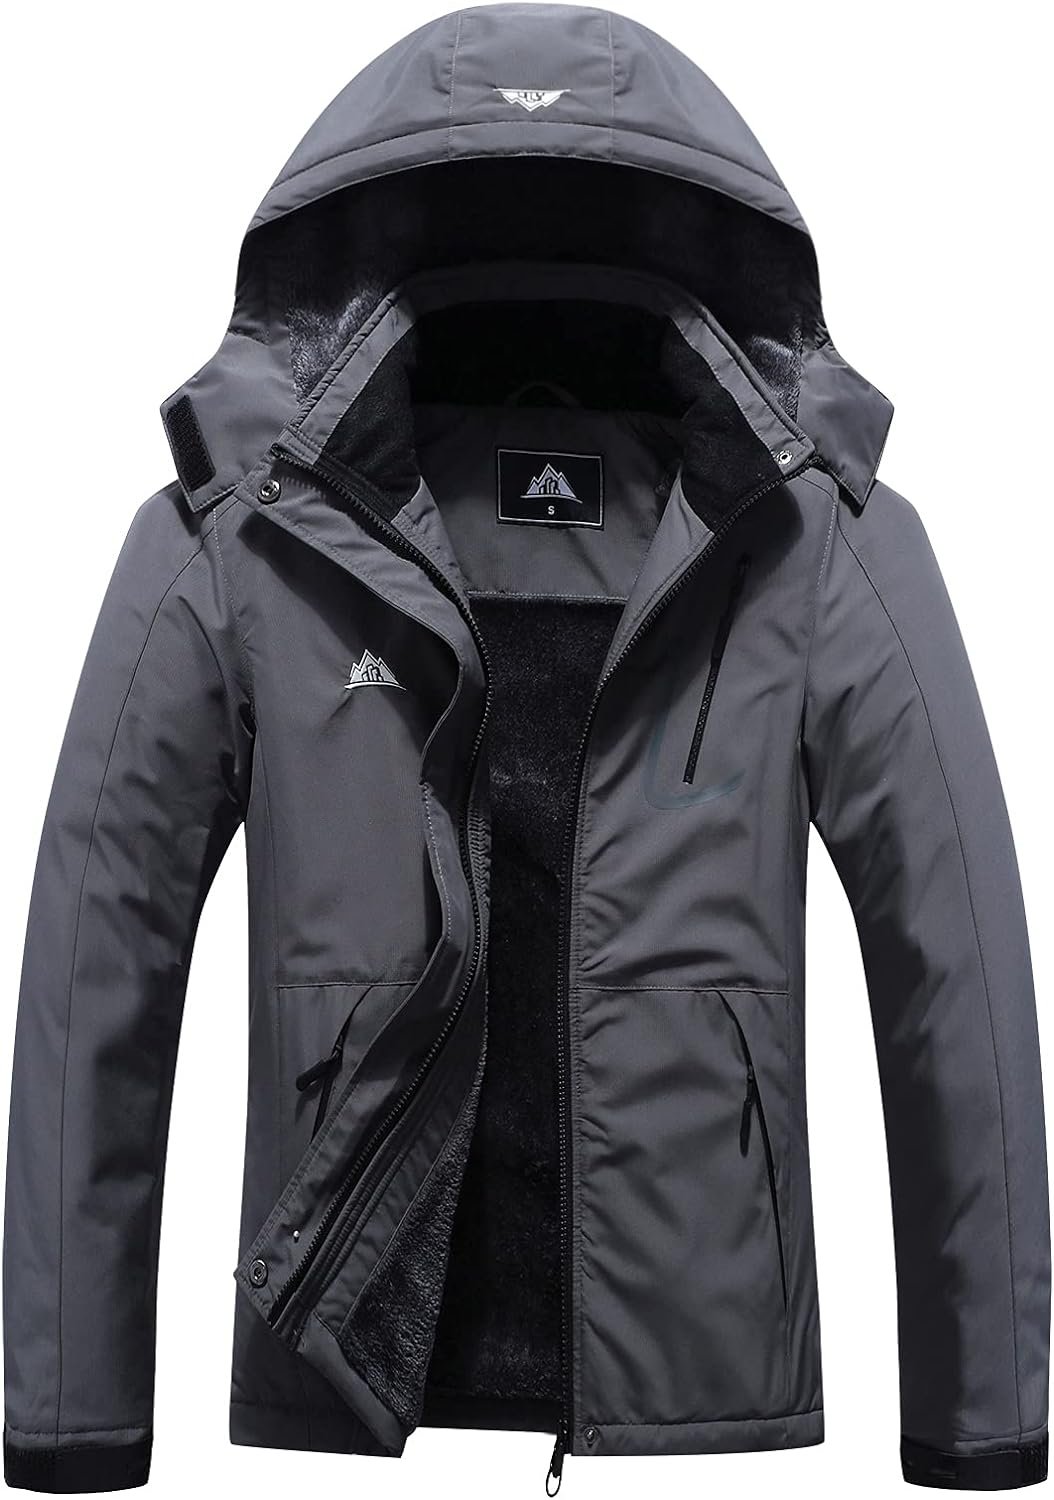 Womens Mountain Waterproof Ski Jacket Windproof Rain Windbreaker Winter Warm Hooded Snow Coat